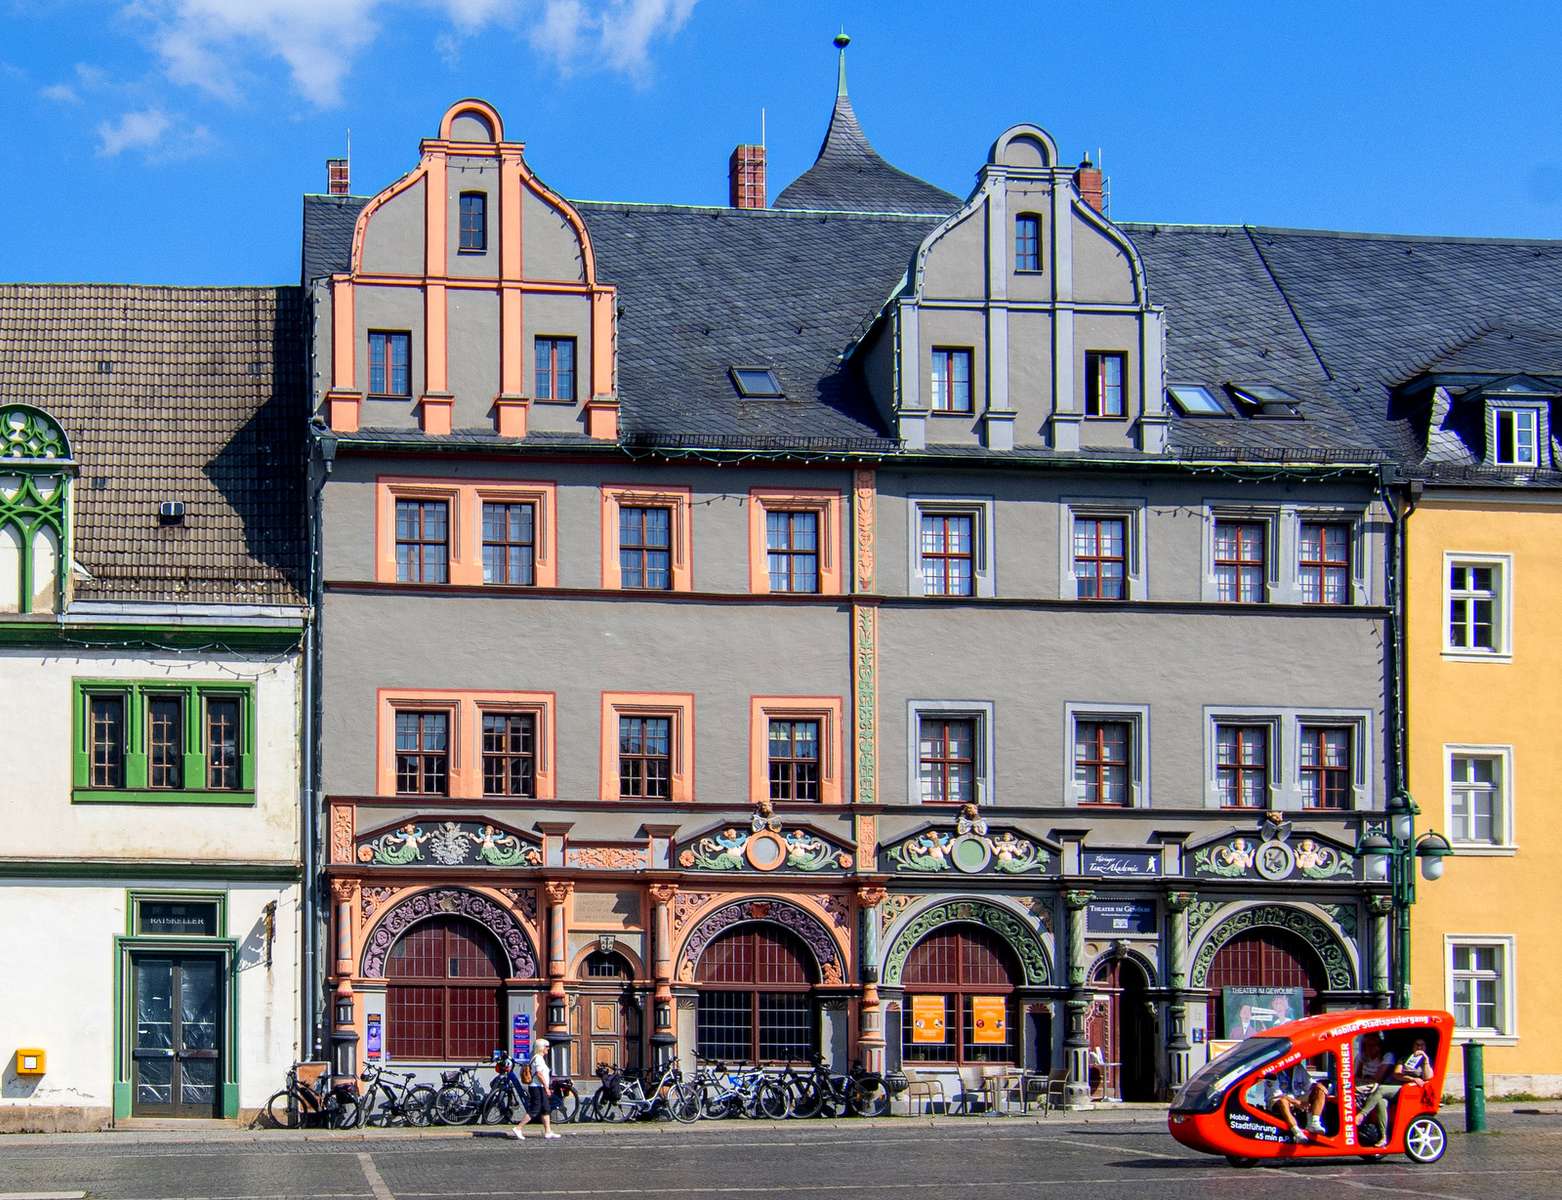 ワイマール市場広場の歴史的な家々 (ドイツ) オンラインパズル